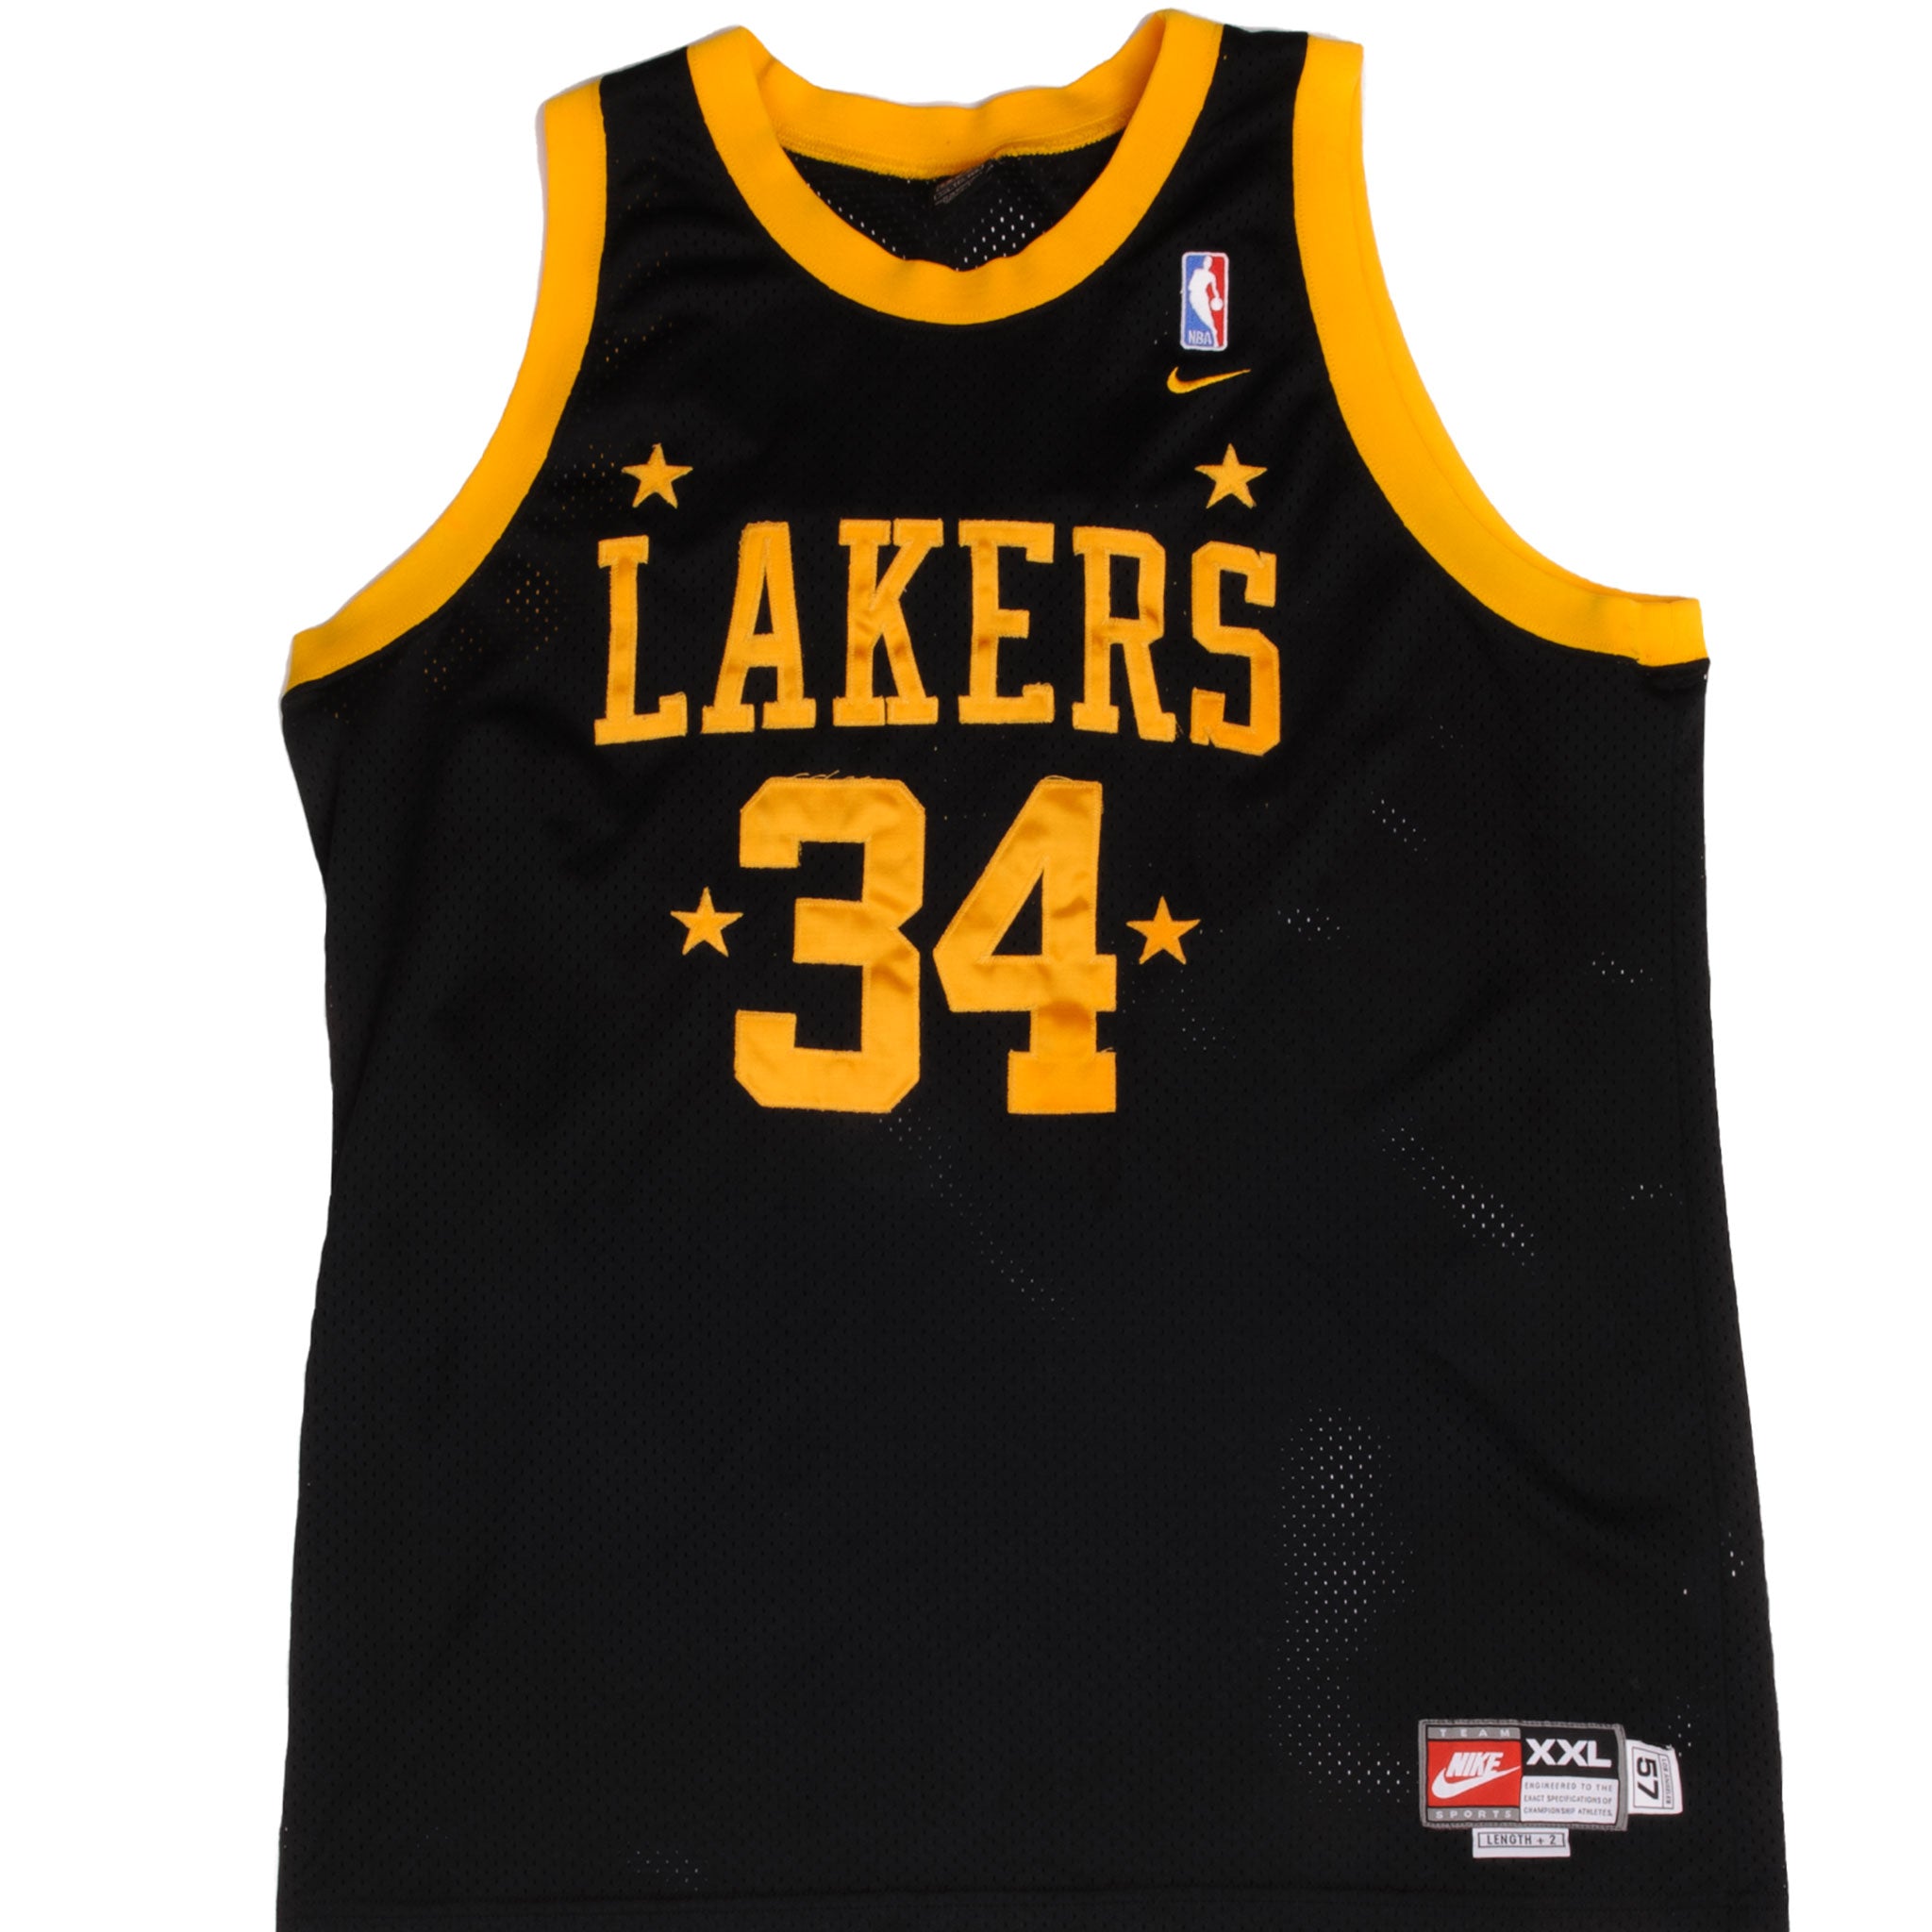 Shaq Lakers fan gear